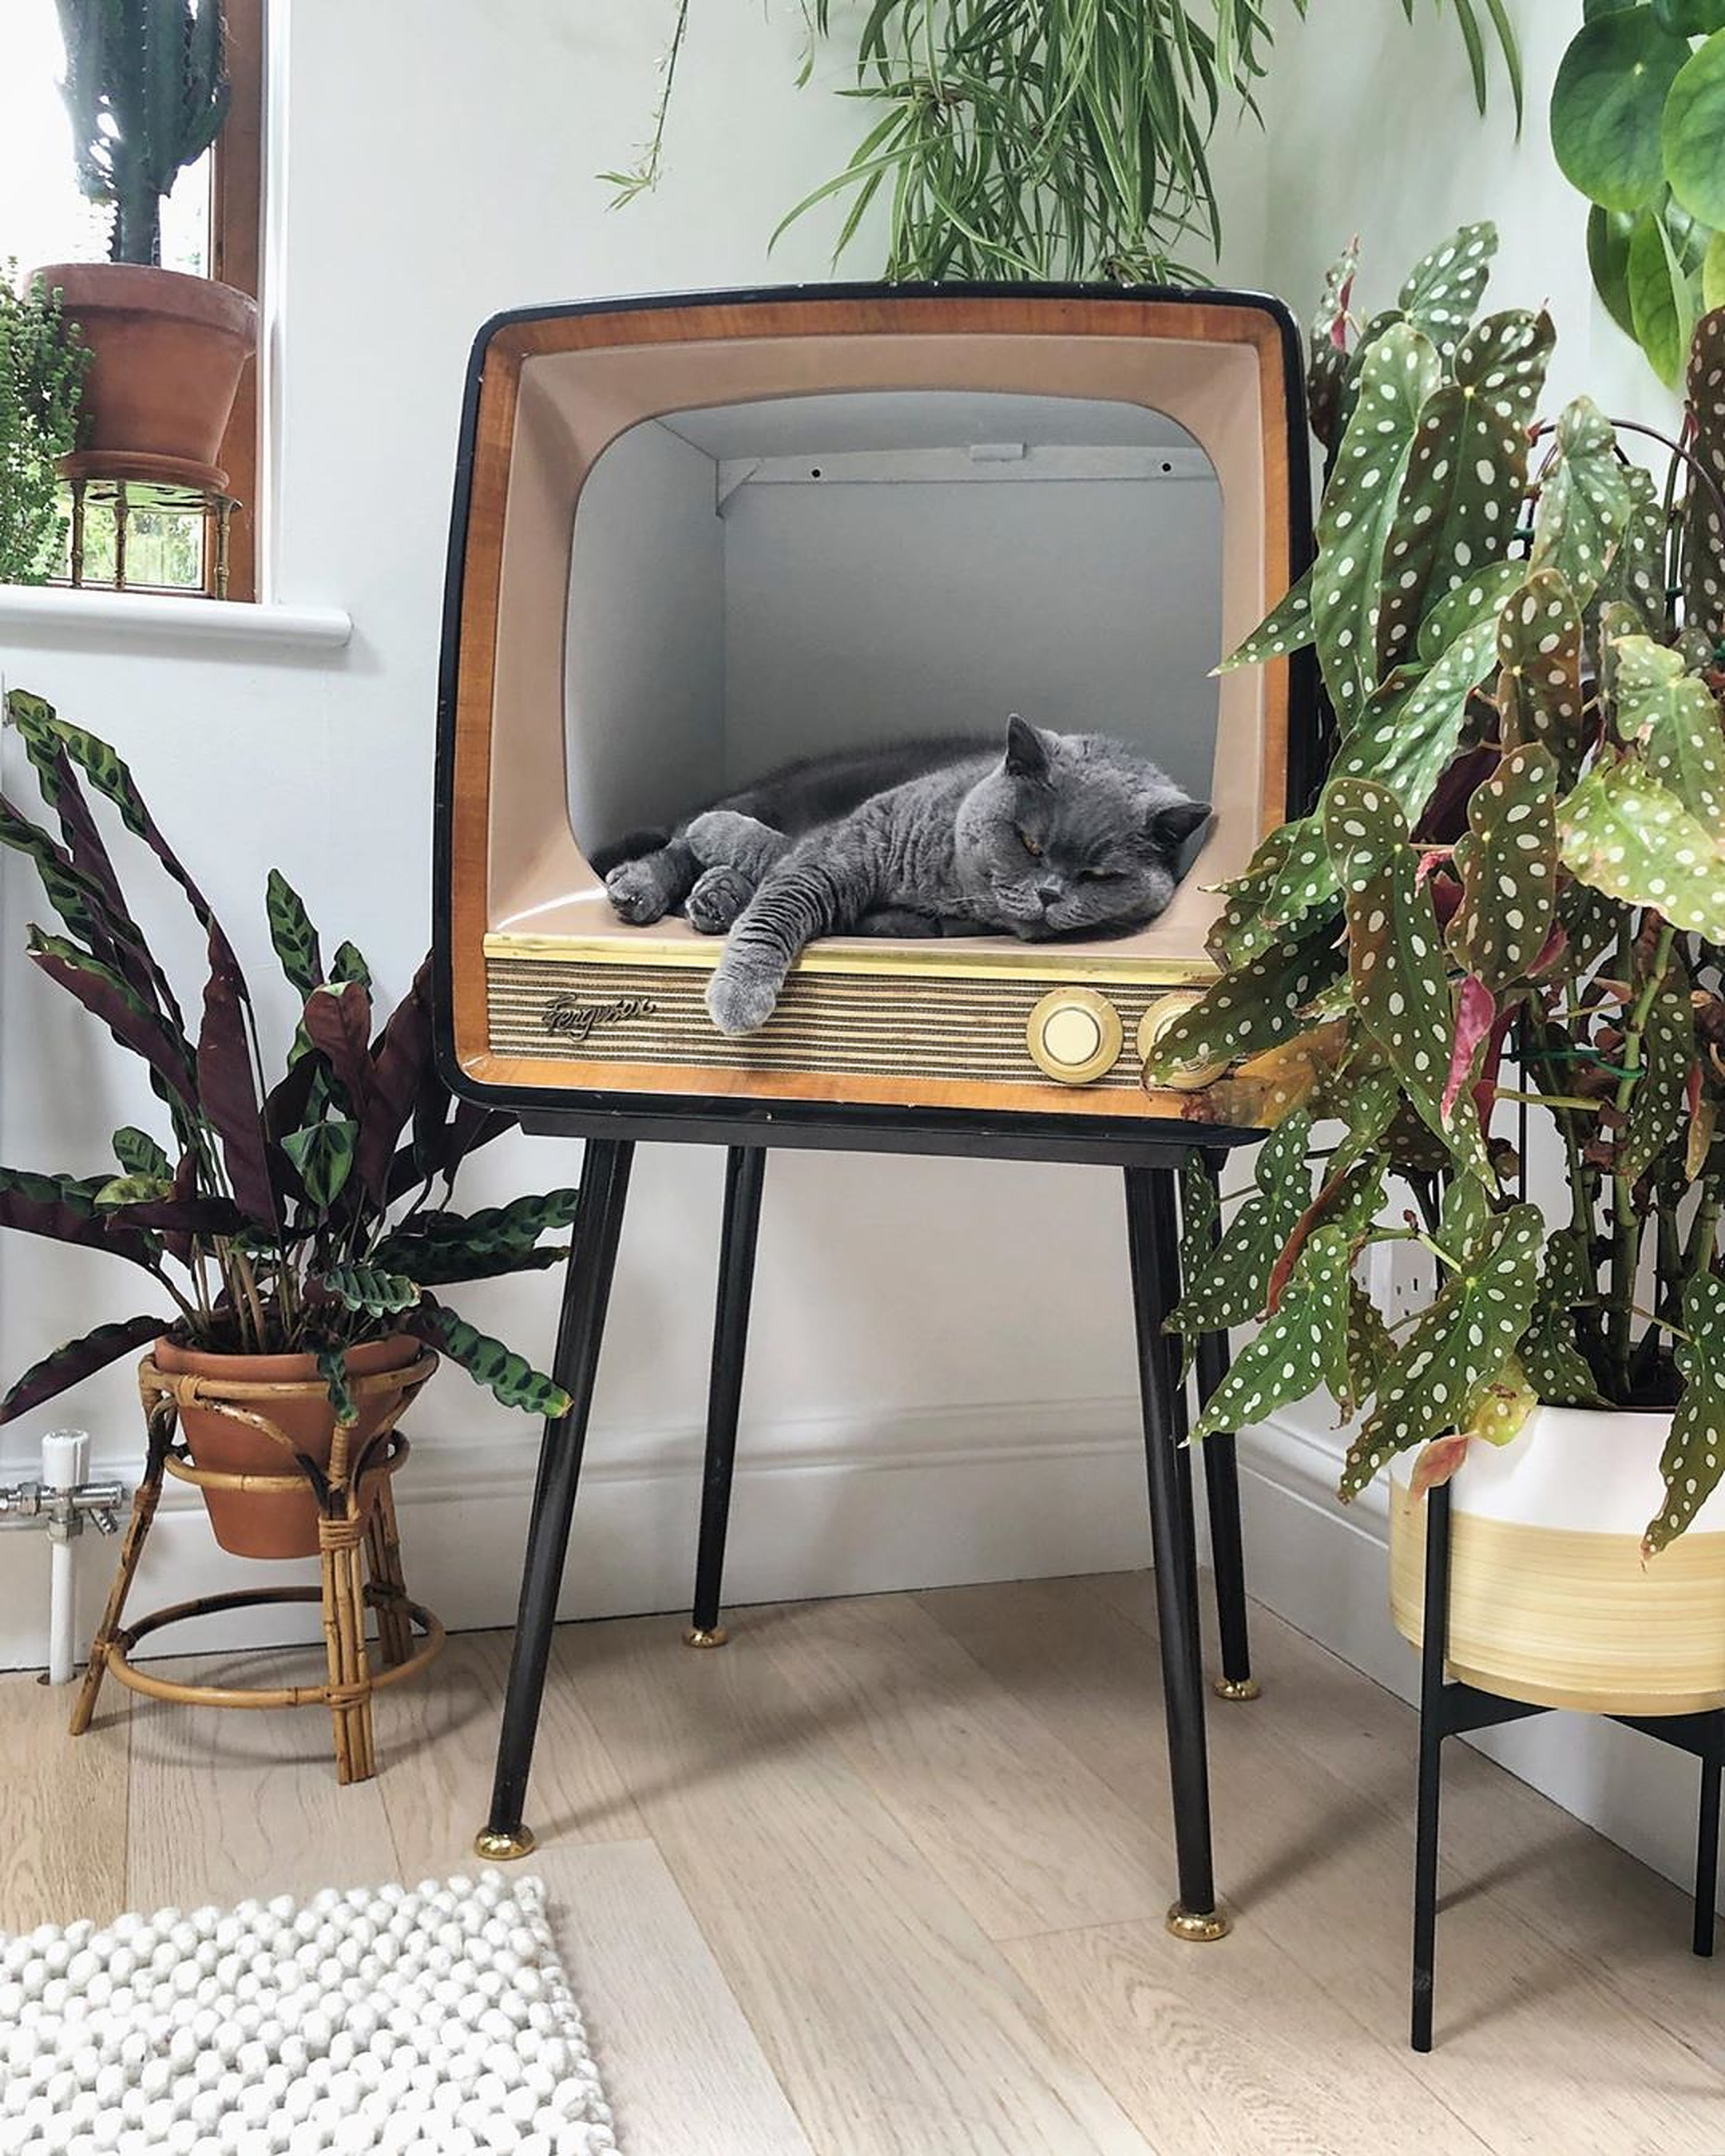 Een foto van een kat in een oude tv